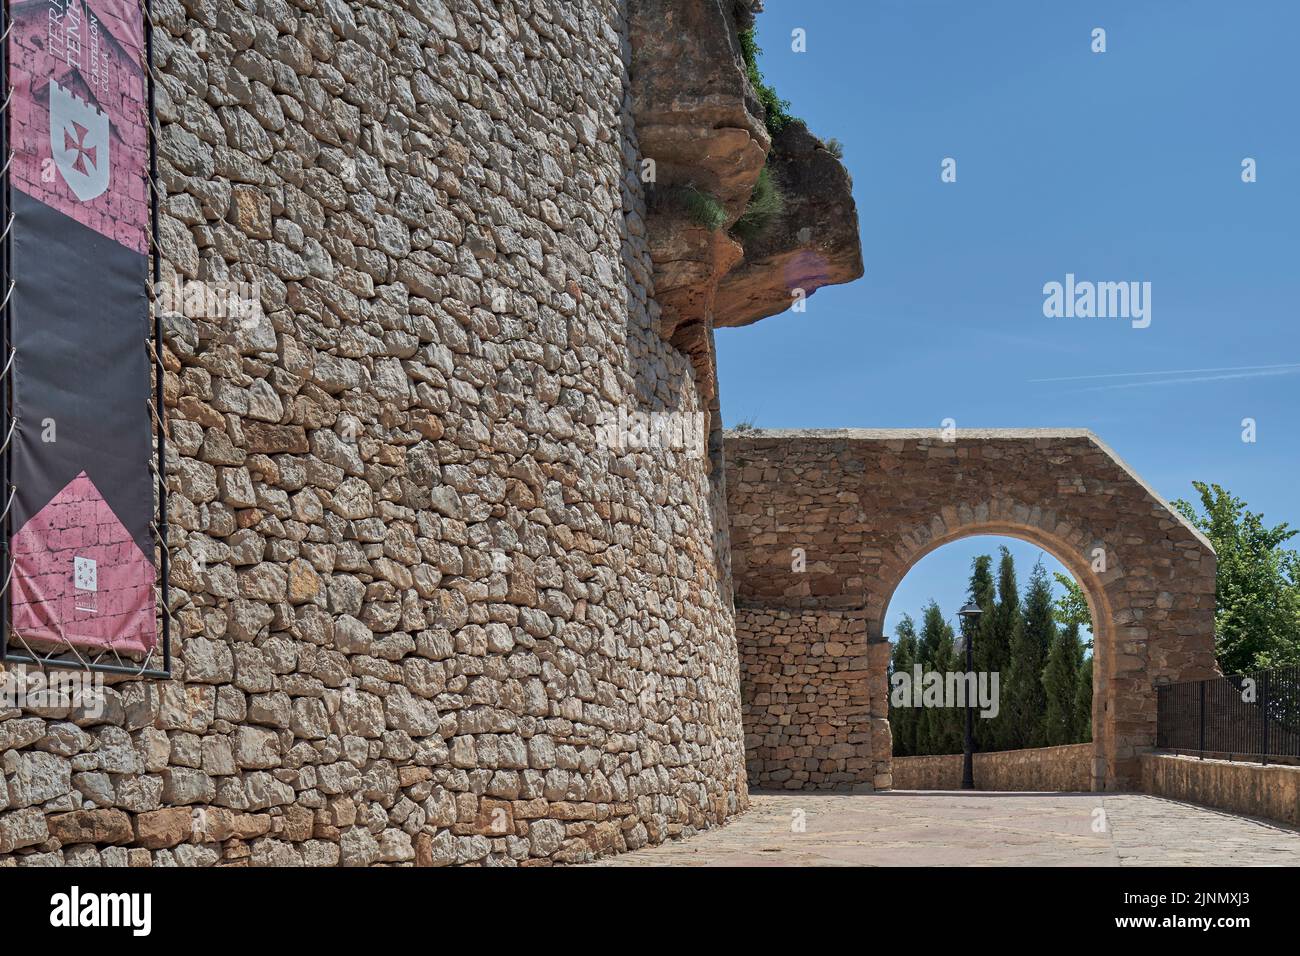 Arco de entrada de la muralla a la ciudad de Culla, declarada la más bella de España, Castellón, España, Europa Foto de stock